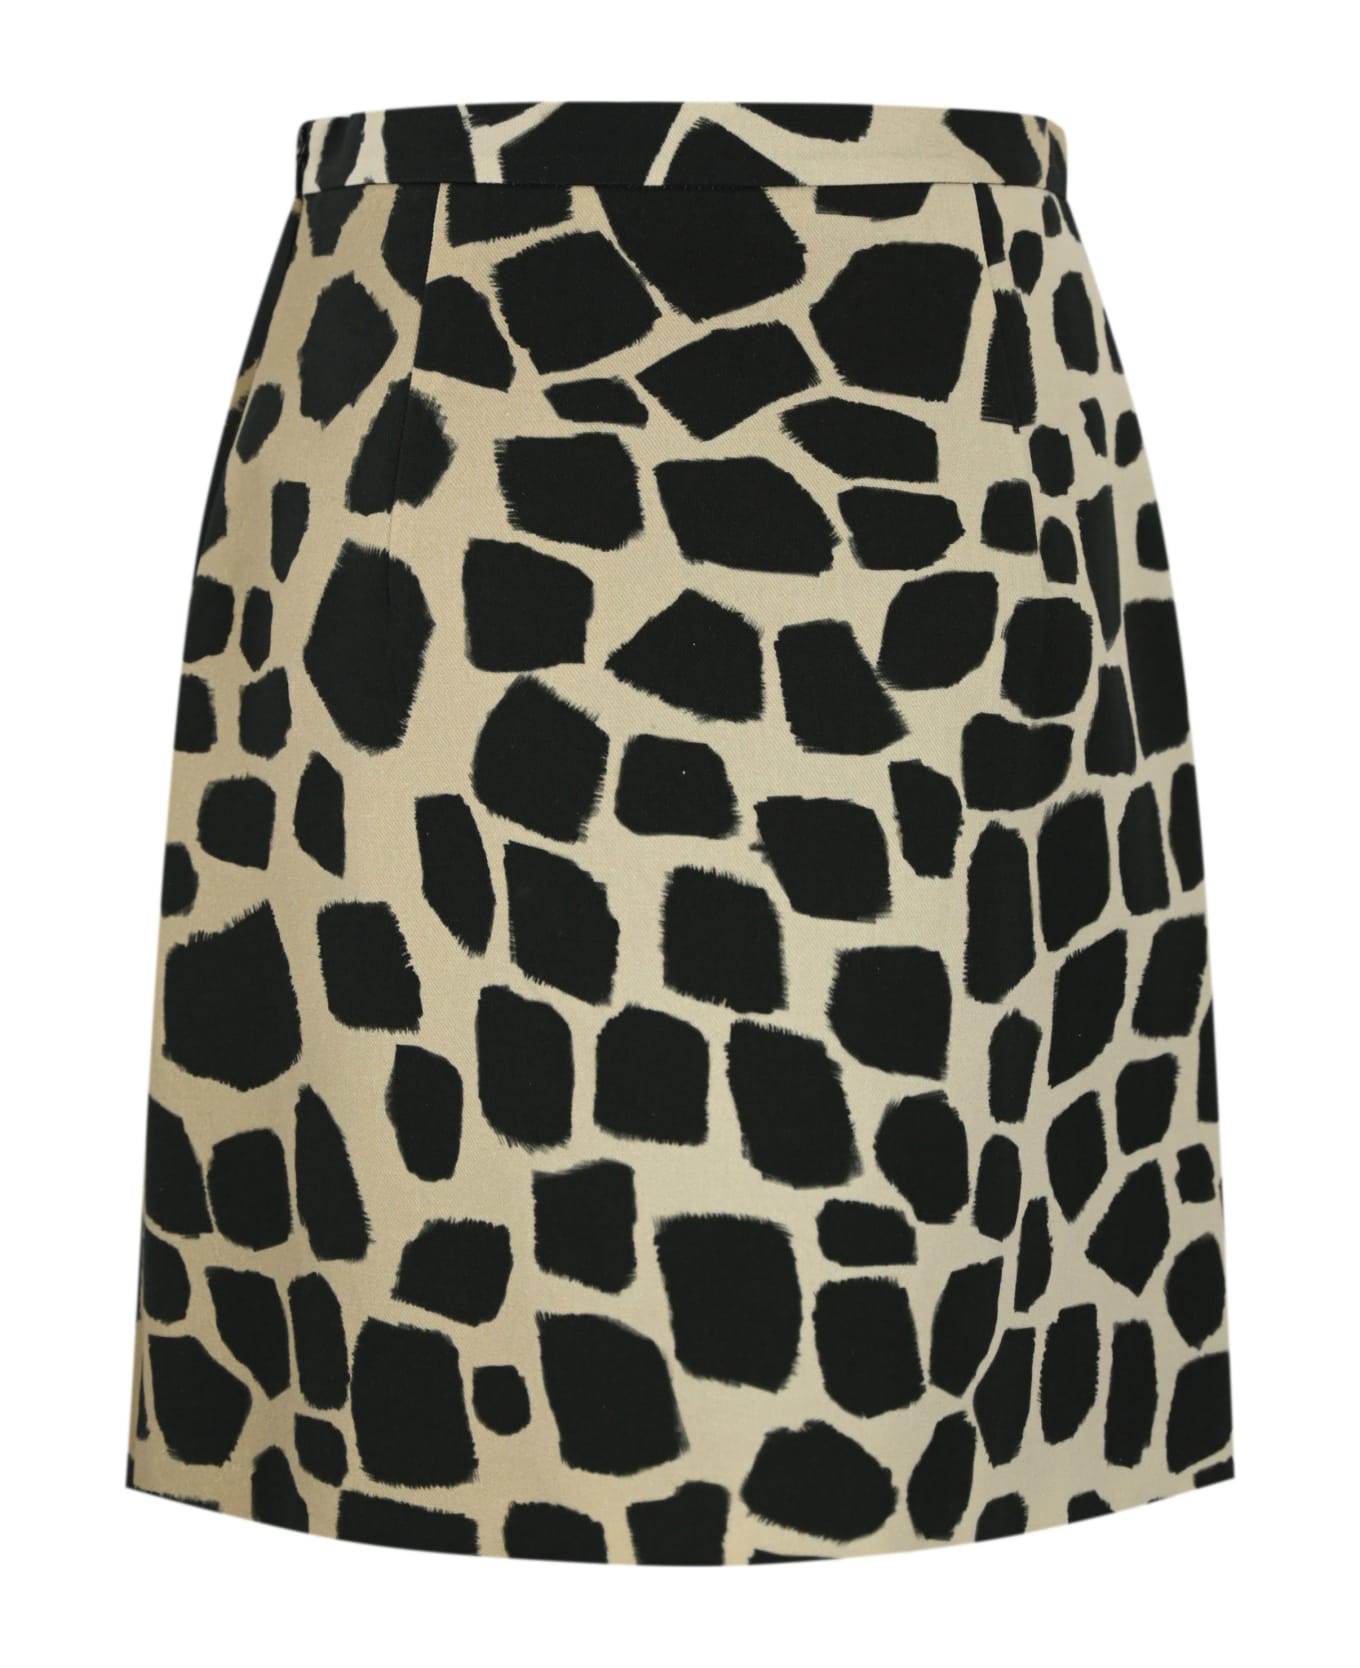 Max Mara Studio 'giovane' Cotton And Linen Skirt - Giraffa スカート